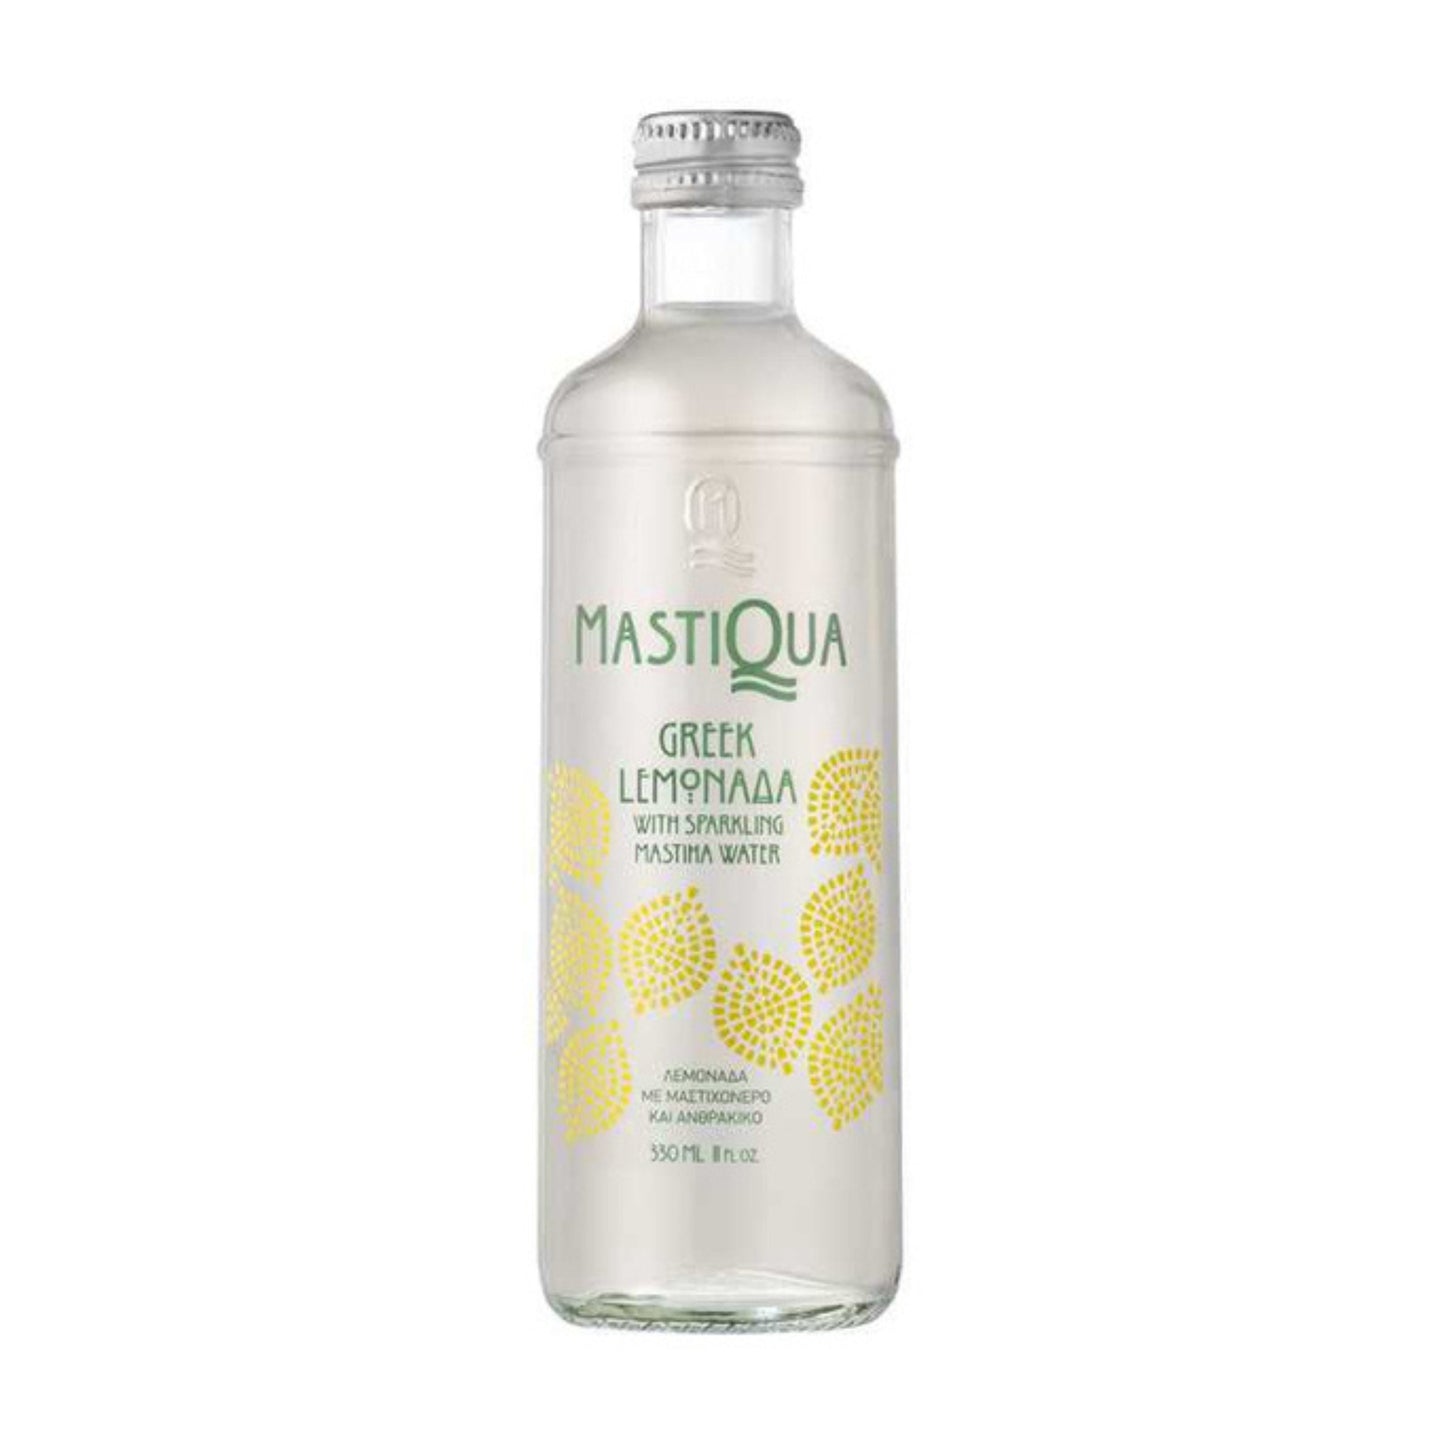 Griechische Limonade mit Mastix - 330ml 